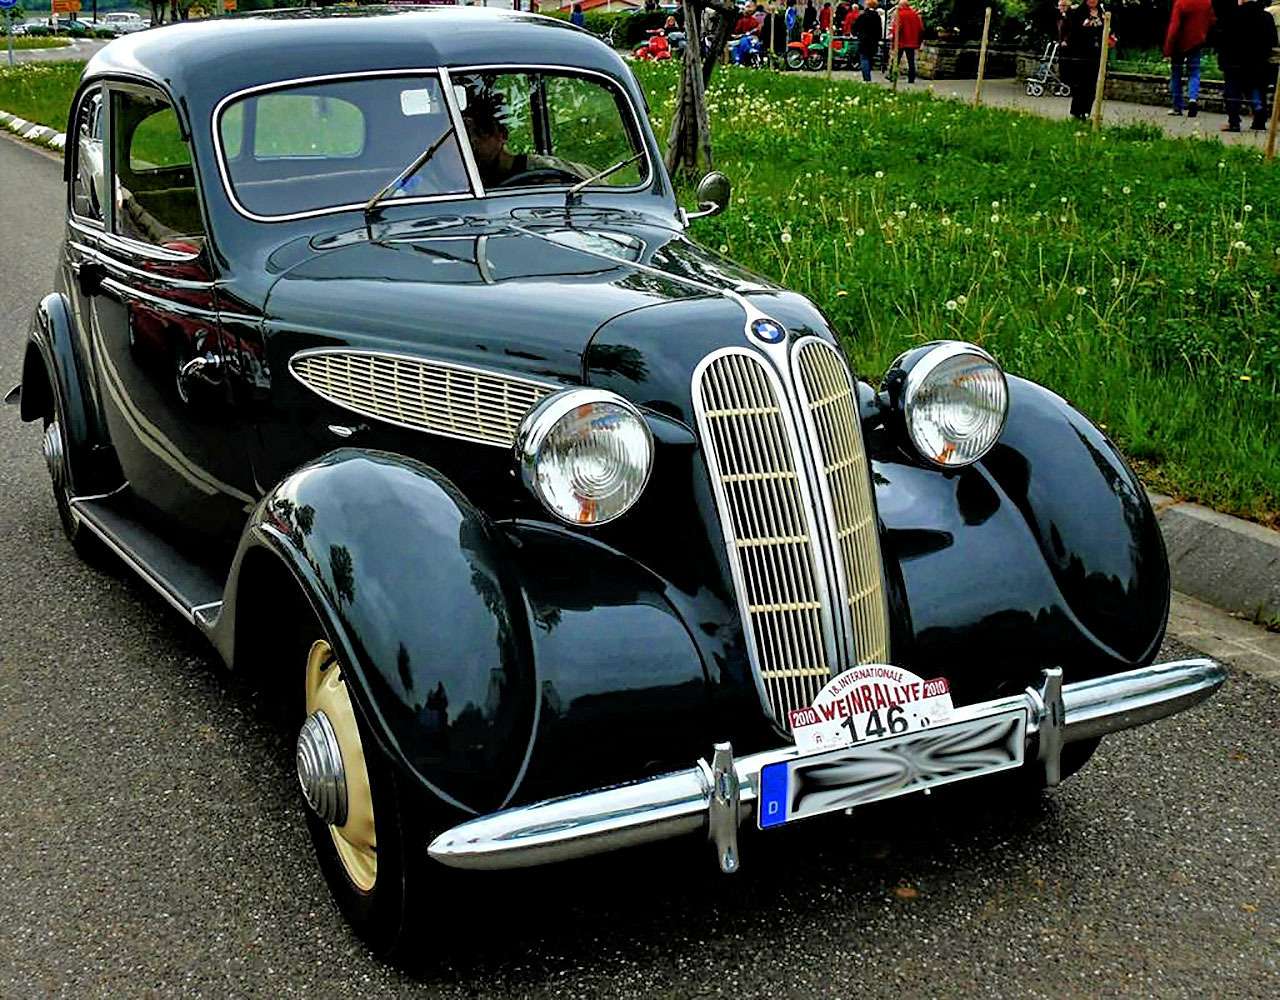 Уже в 1945-м советско-немецкий завод, как было написано в постановлении СВАГ - «во имя народа Тюрингии» - возродил производство автомобилей BMW 321 конструкции 1939 г. с 6-цилиндровым рядным 2,0-литровым двигателем мощностью 45 л.с. Для производства кузовов в Тюрингию из Берлина вывезли оборудование фирмы Ambi-Budd, которая до войны сотрудничала с BMW. До 1950-го сделали около 9 тысяч 321-х BMW и всего 16 четырехдверных седанов BMW 326 с двигателем в 50 л.с. с двумя карбюраторами. Послевоенные BMW, которые вполне можно числить советскими, были хорошо известны в СССР, куда их поставляли по репарациям.